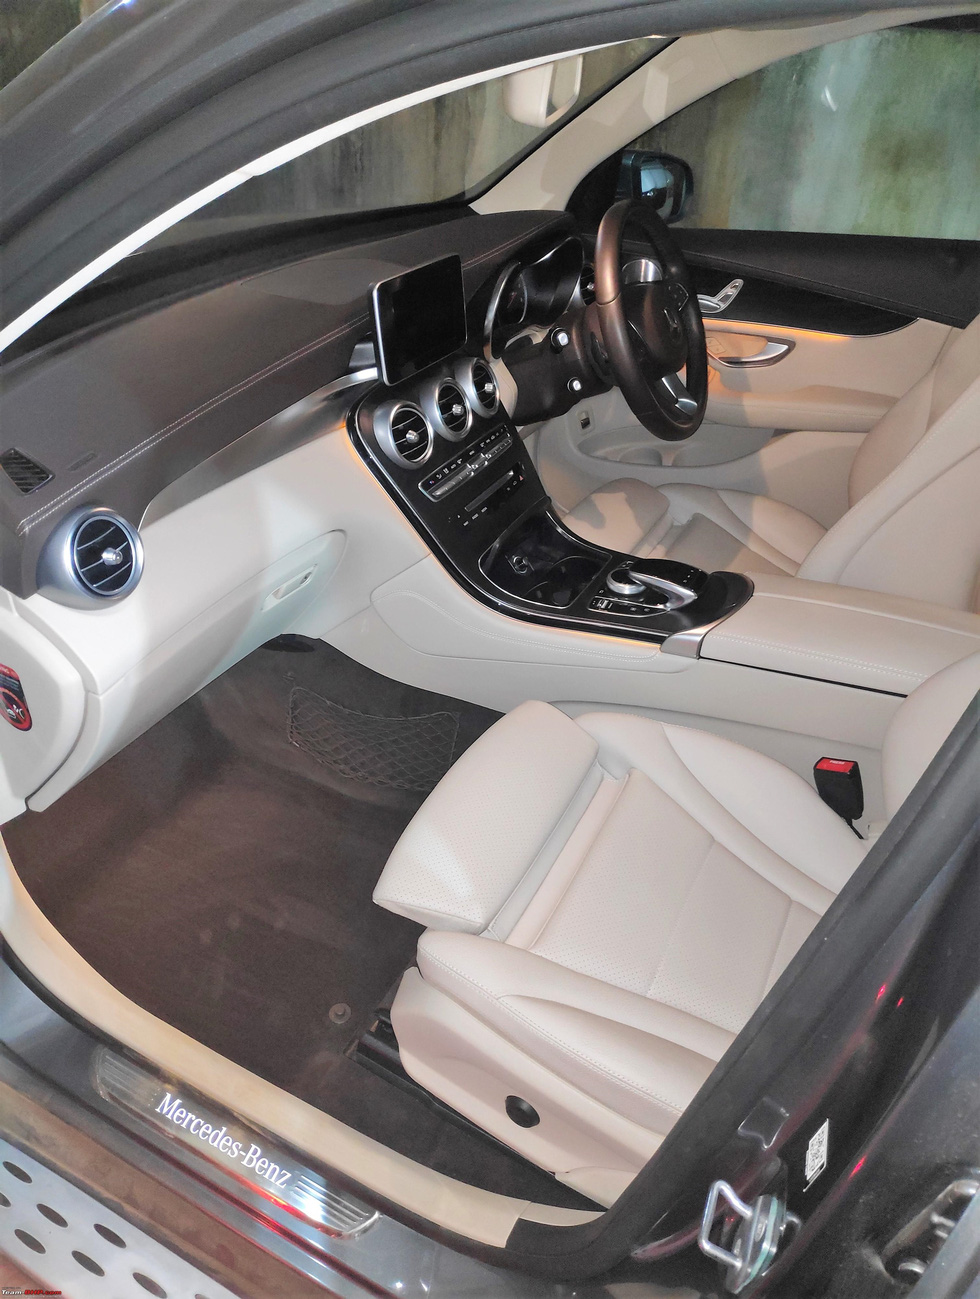 BMW ghế sau khó chịu, Audi, Volvo ‘đội giá’, chủ xe chốt ngay Mercedes-Benz GLC - Ảnh 7.